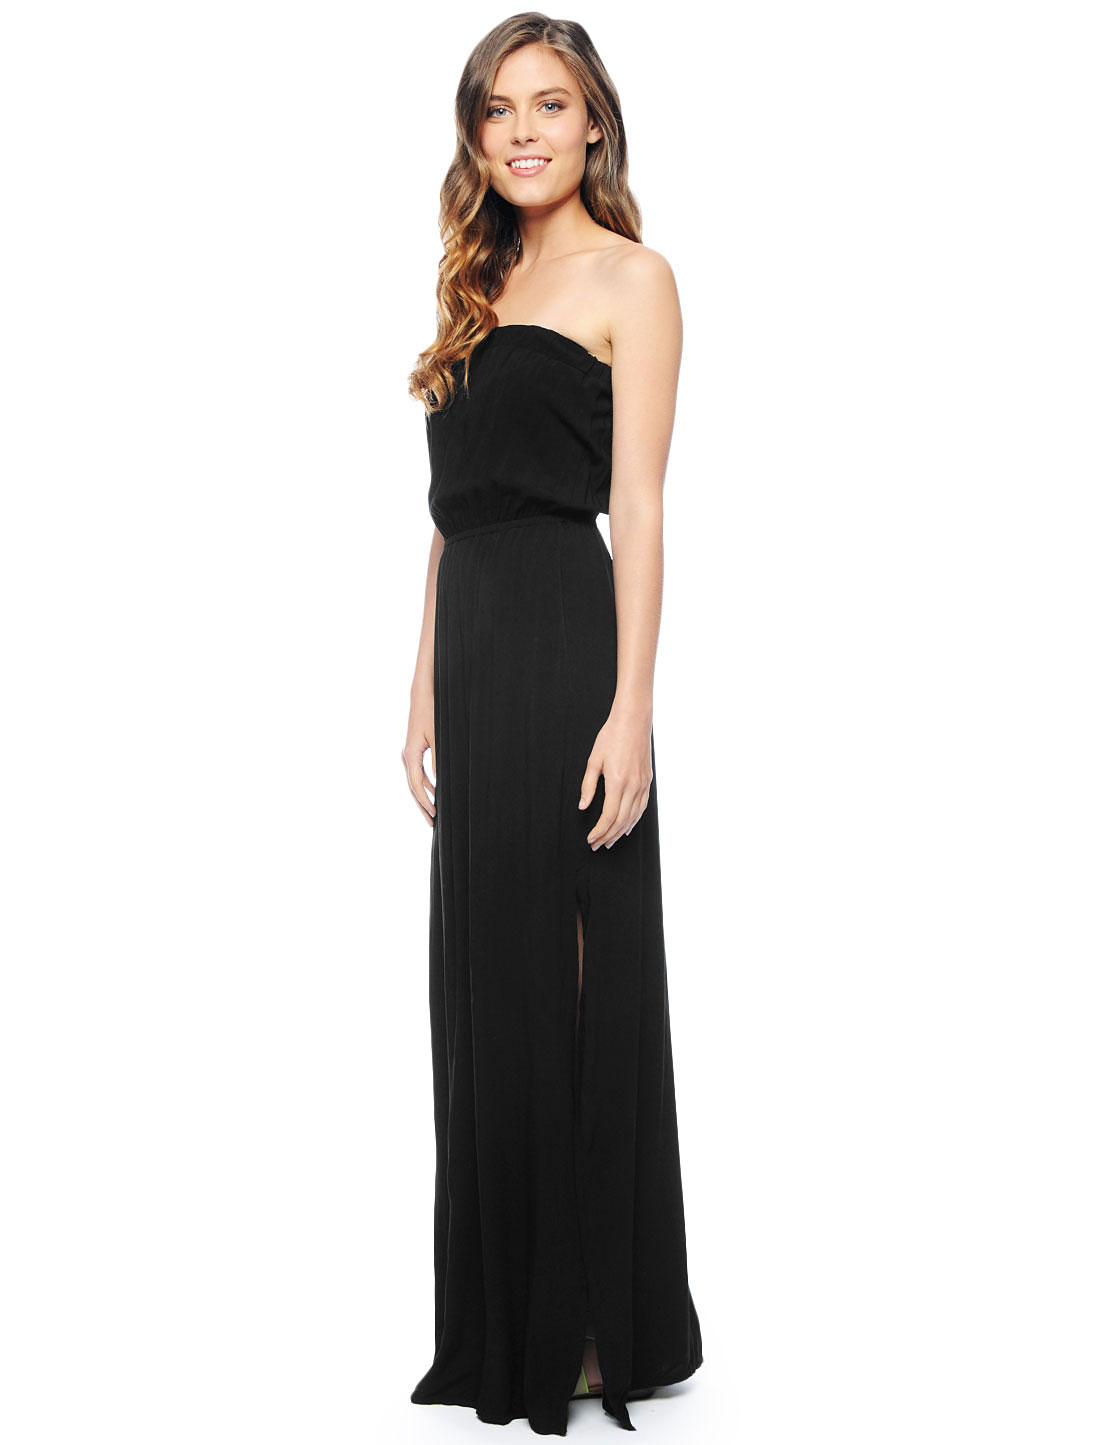 Lyst - Splendid Strapless Maxi Dress in Black